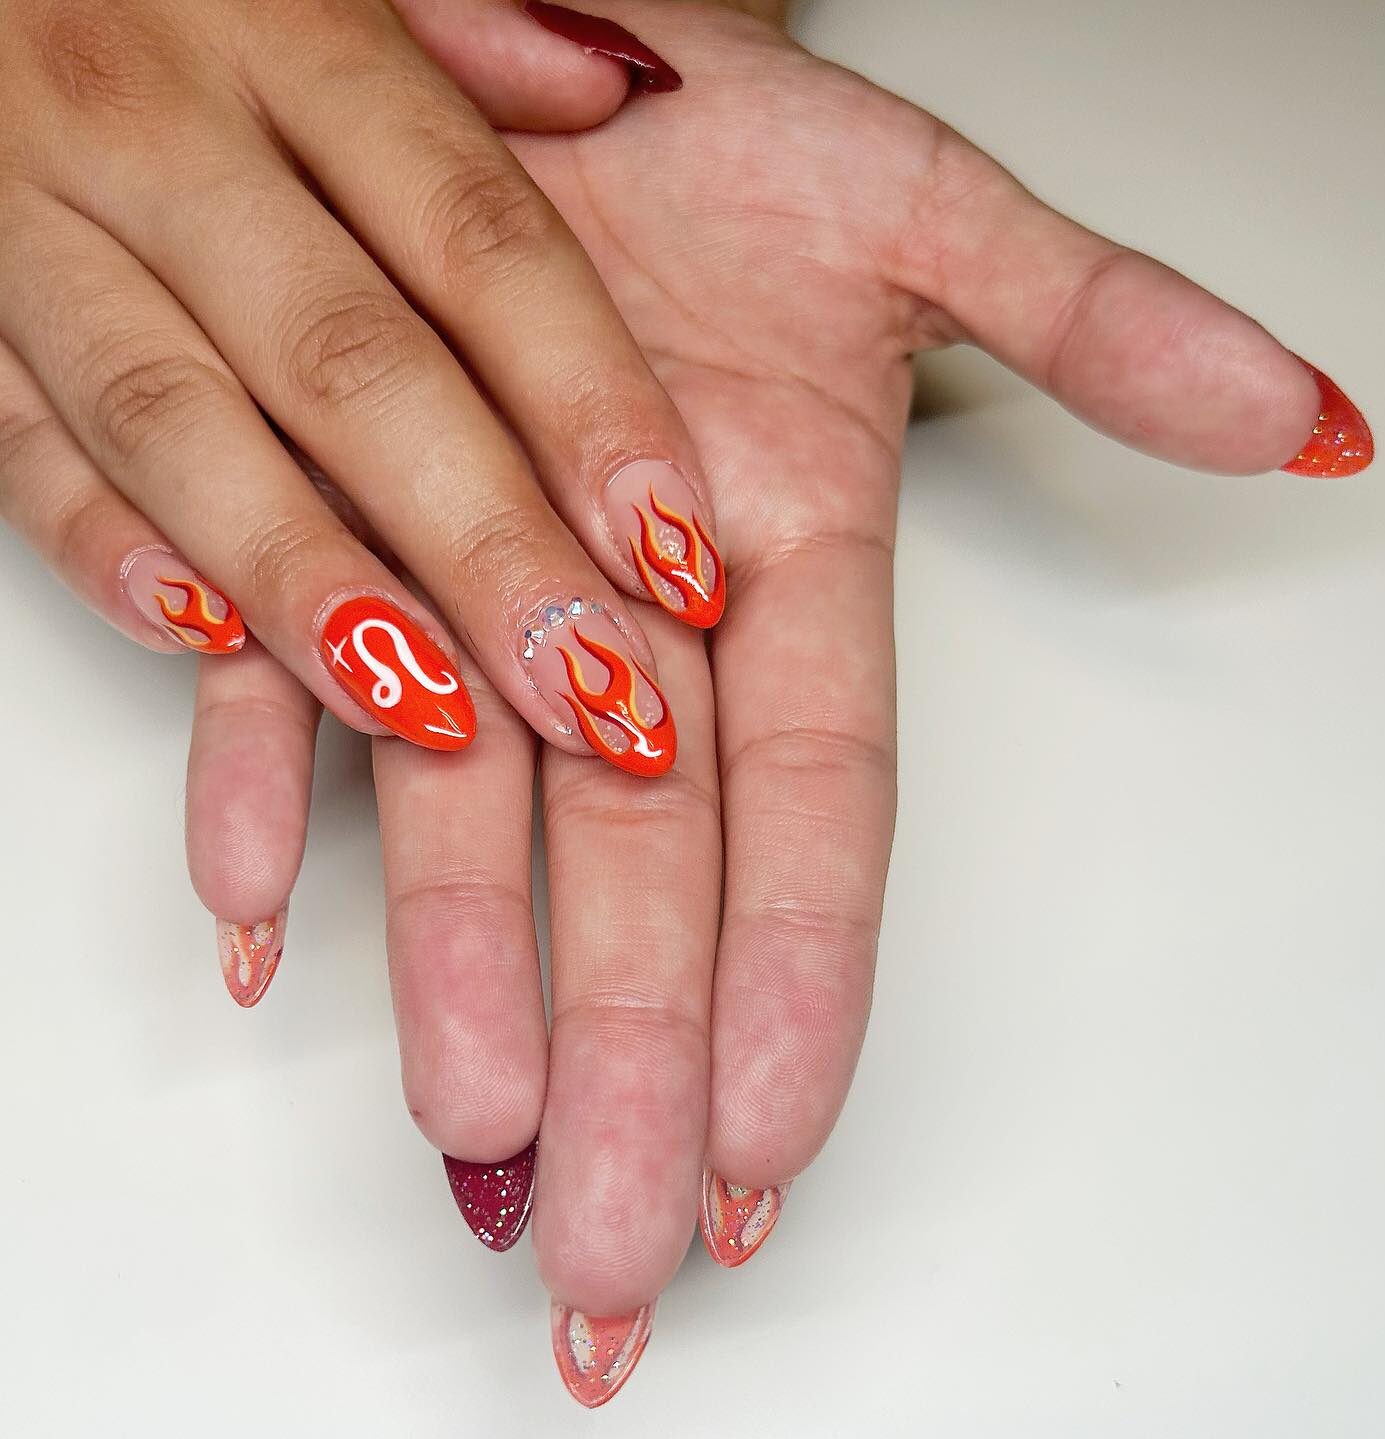 Diseño de uñas con llamas de color naranja vibrante y arte de uñas con el signo Leo en uñas redondas medianas